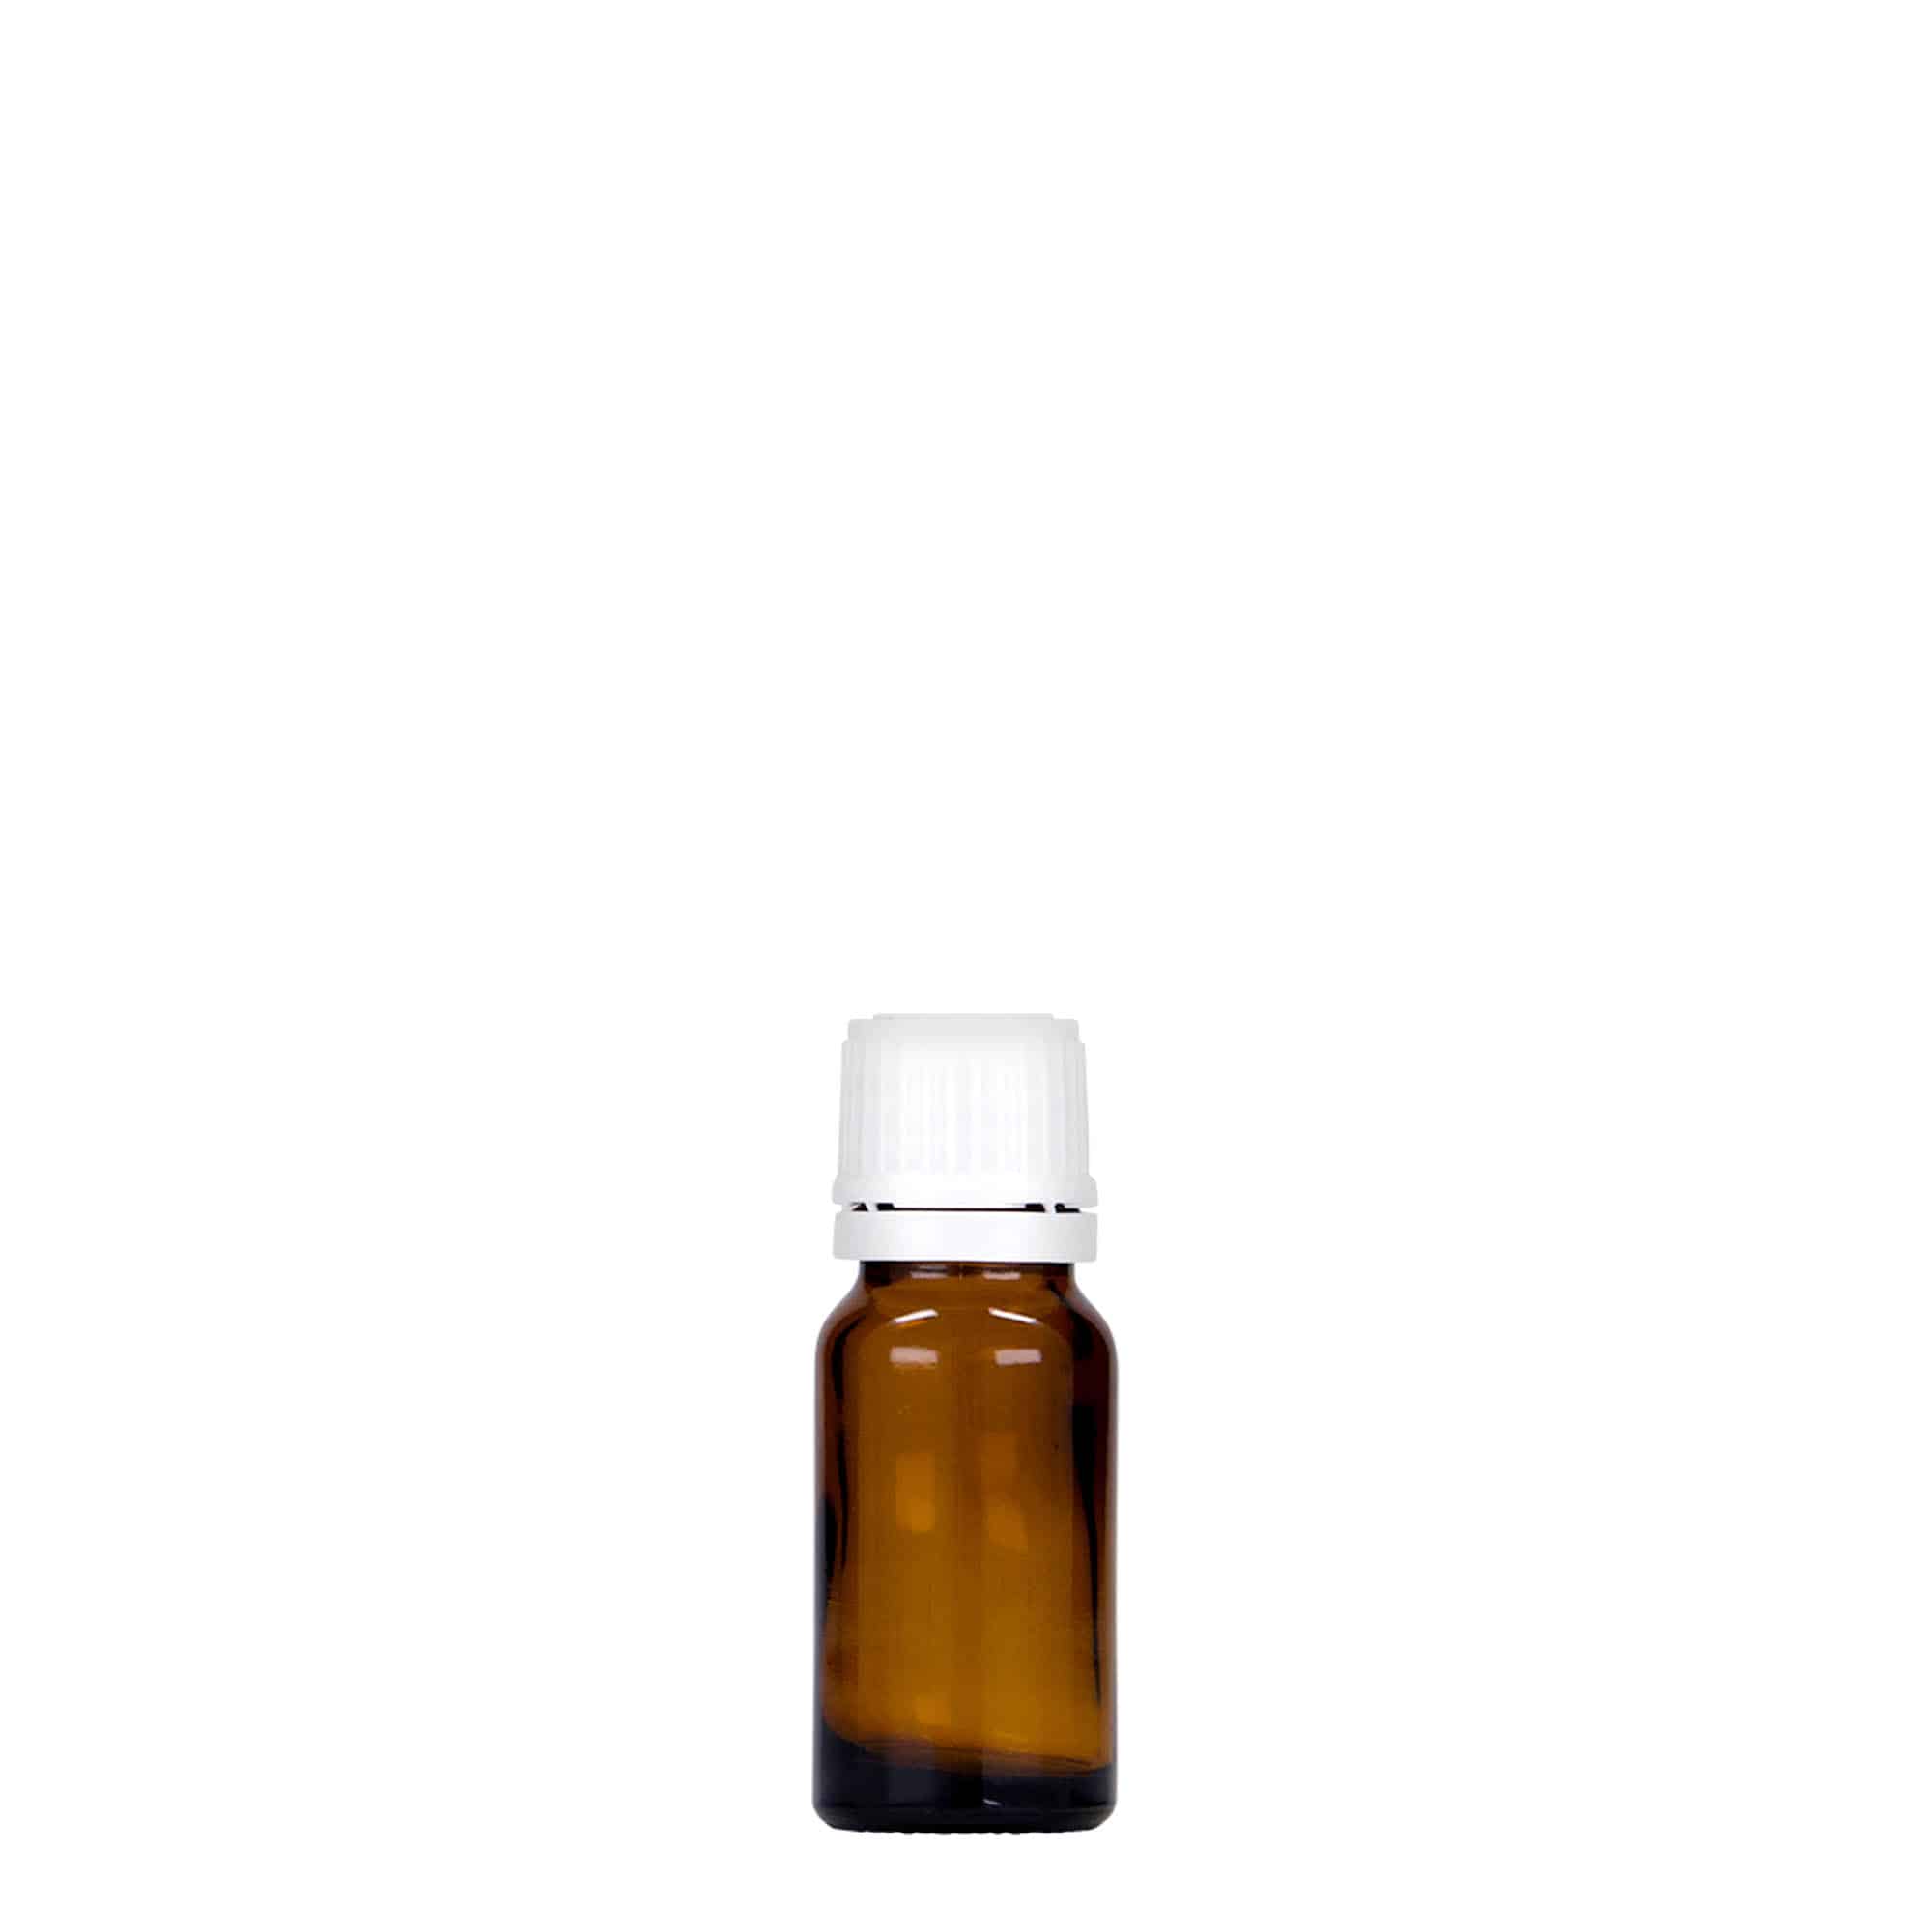 10 ml butelka farmaceutyczna, szkło, kolor brązowy, zamknięcie: DIN 18